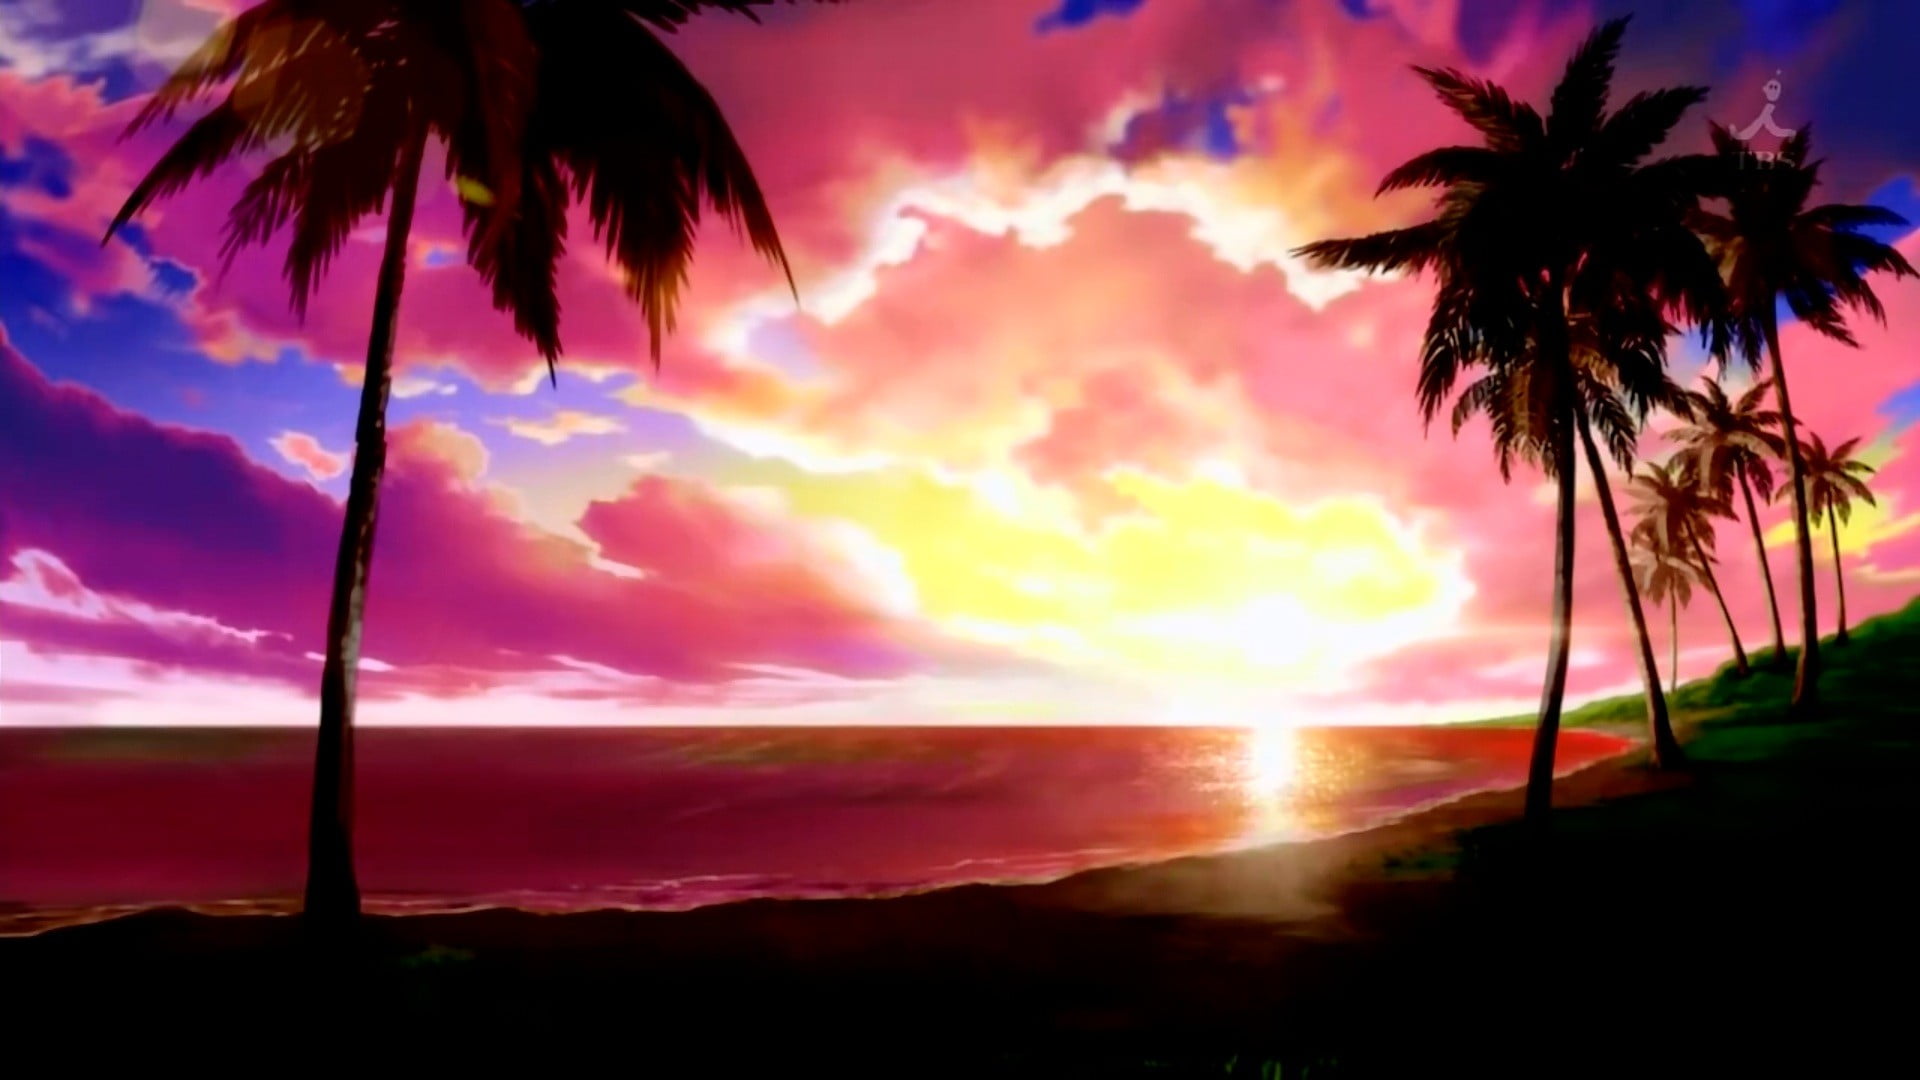 anime-landscape-beach-sunset-wallpaper.jpg